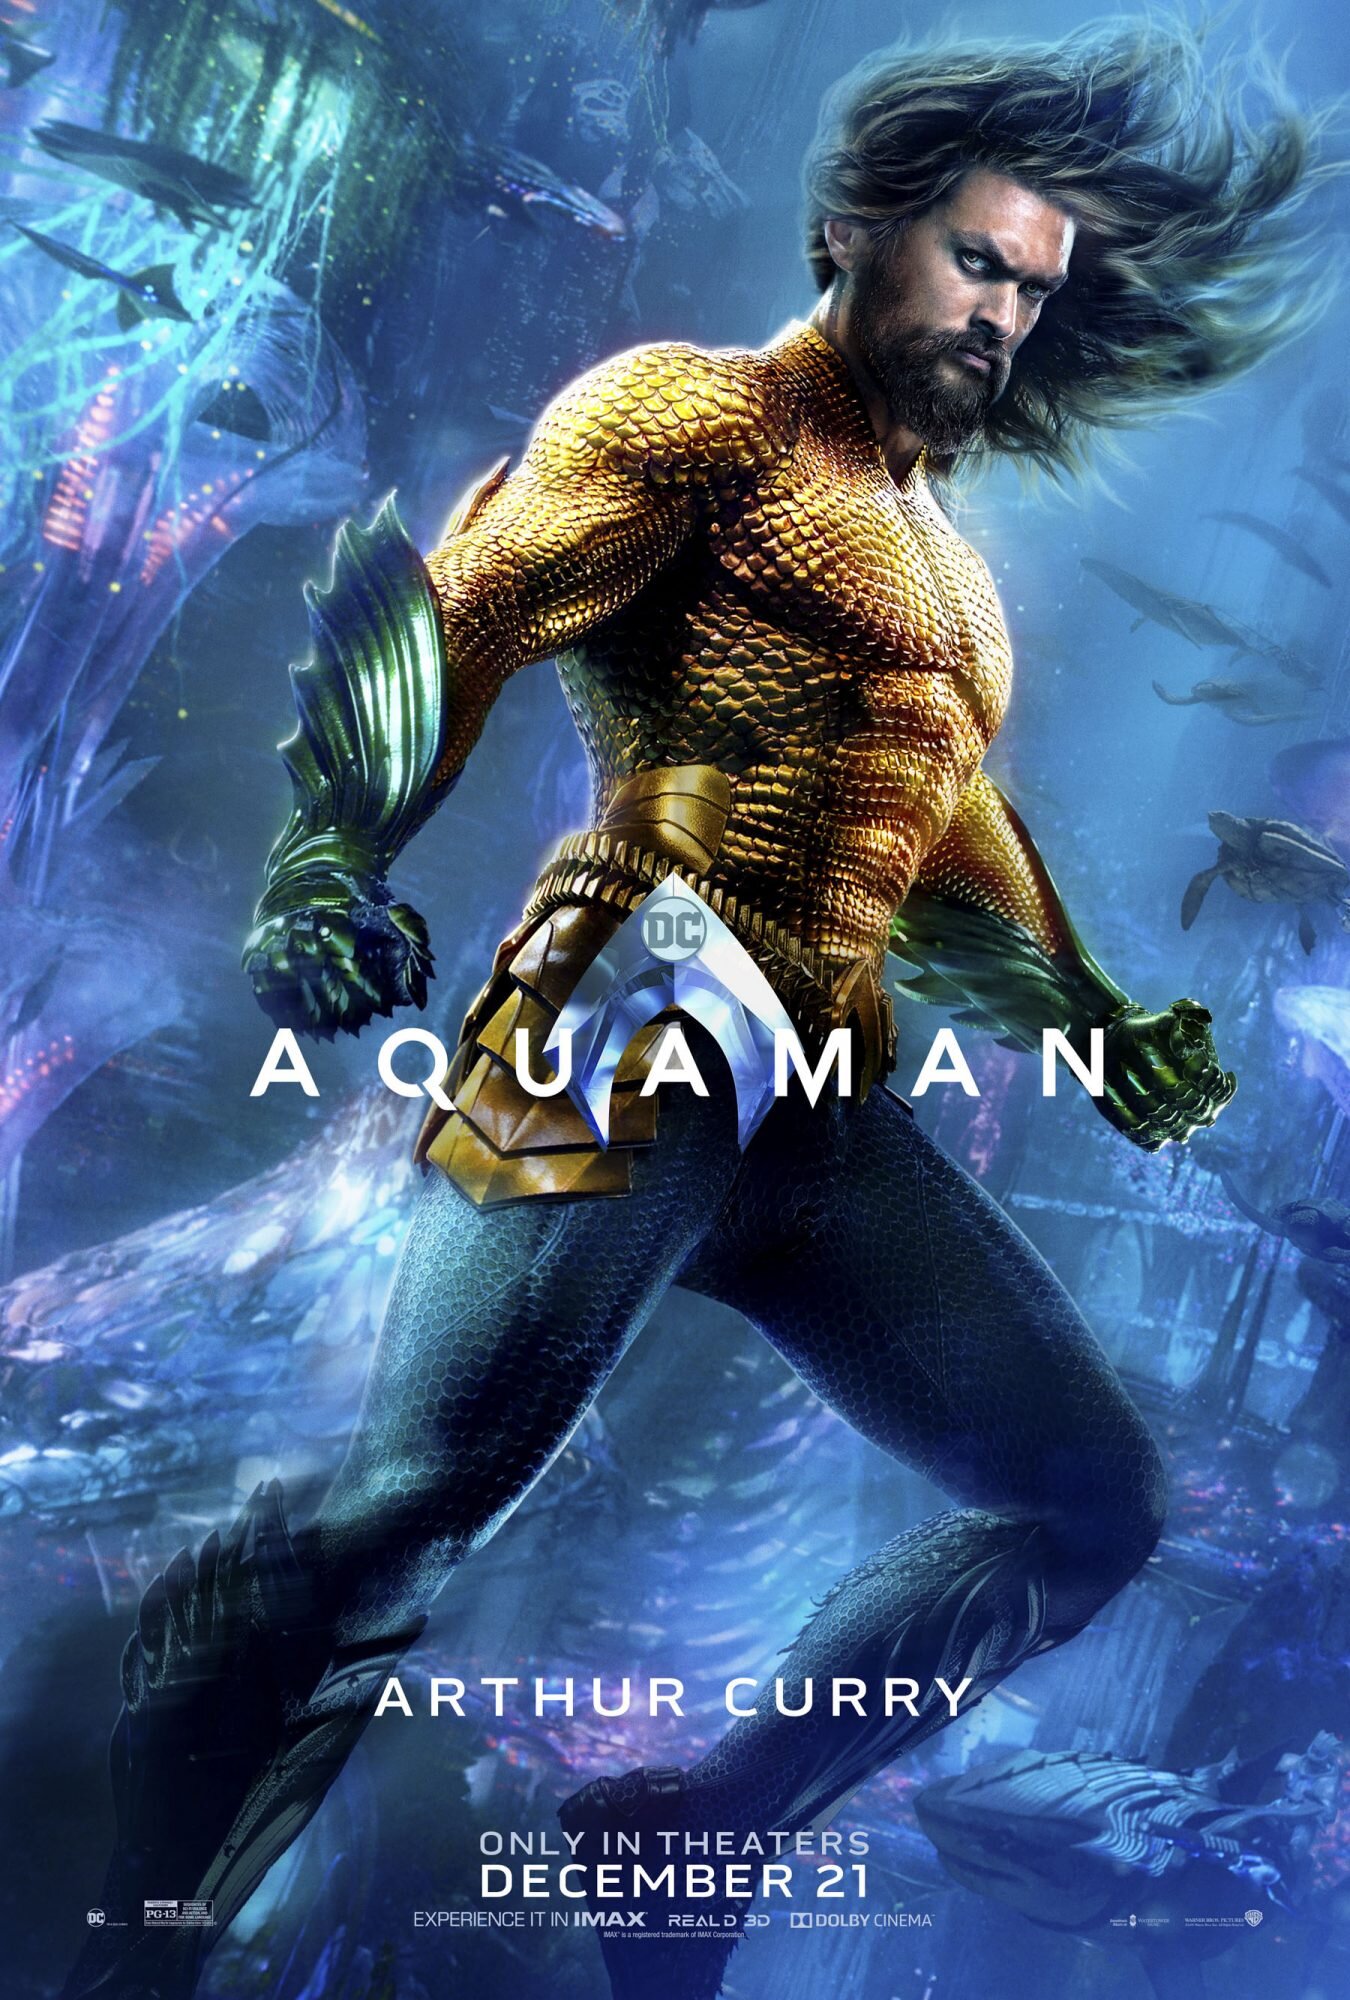 Aquaman reveals 7 new character photo